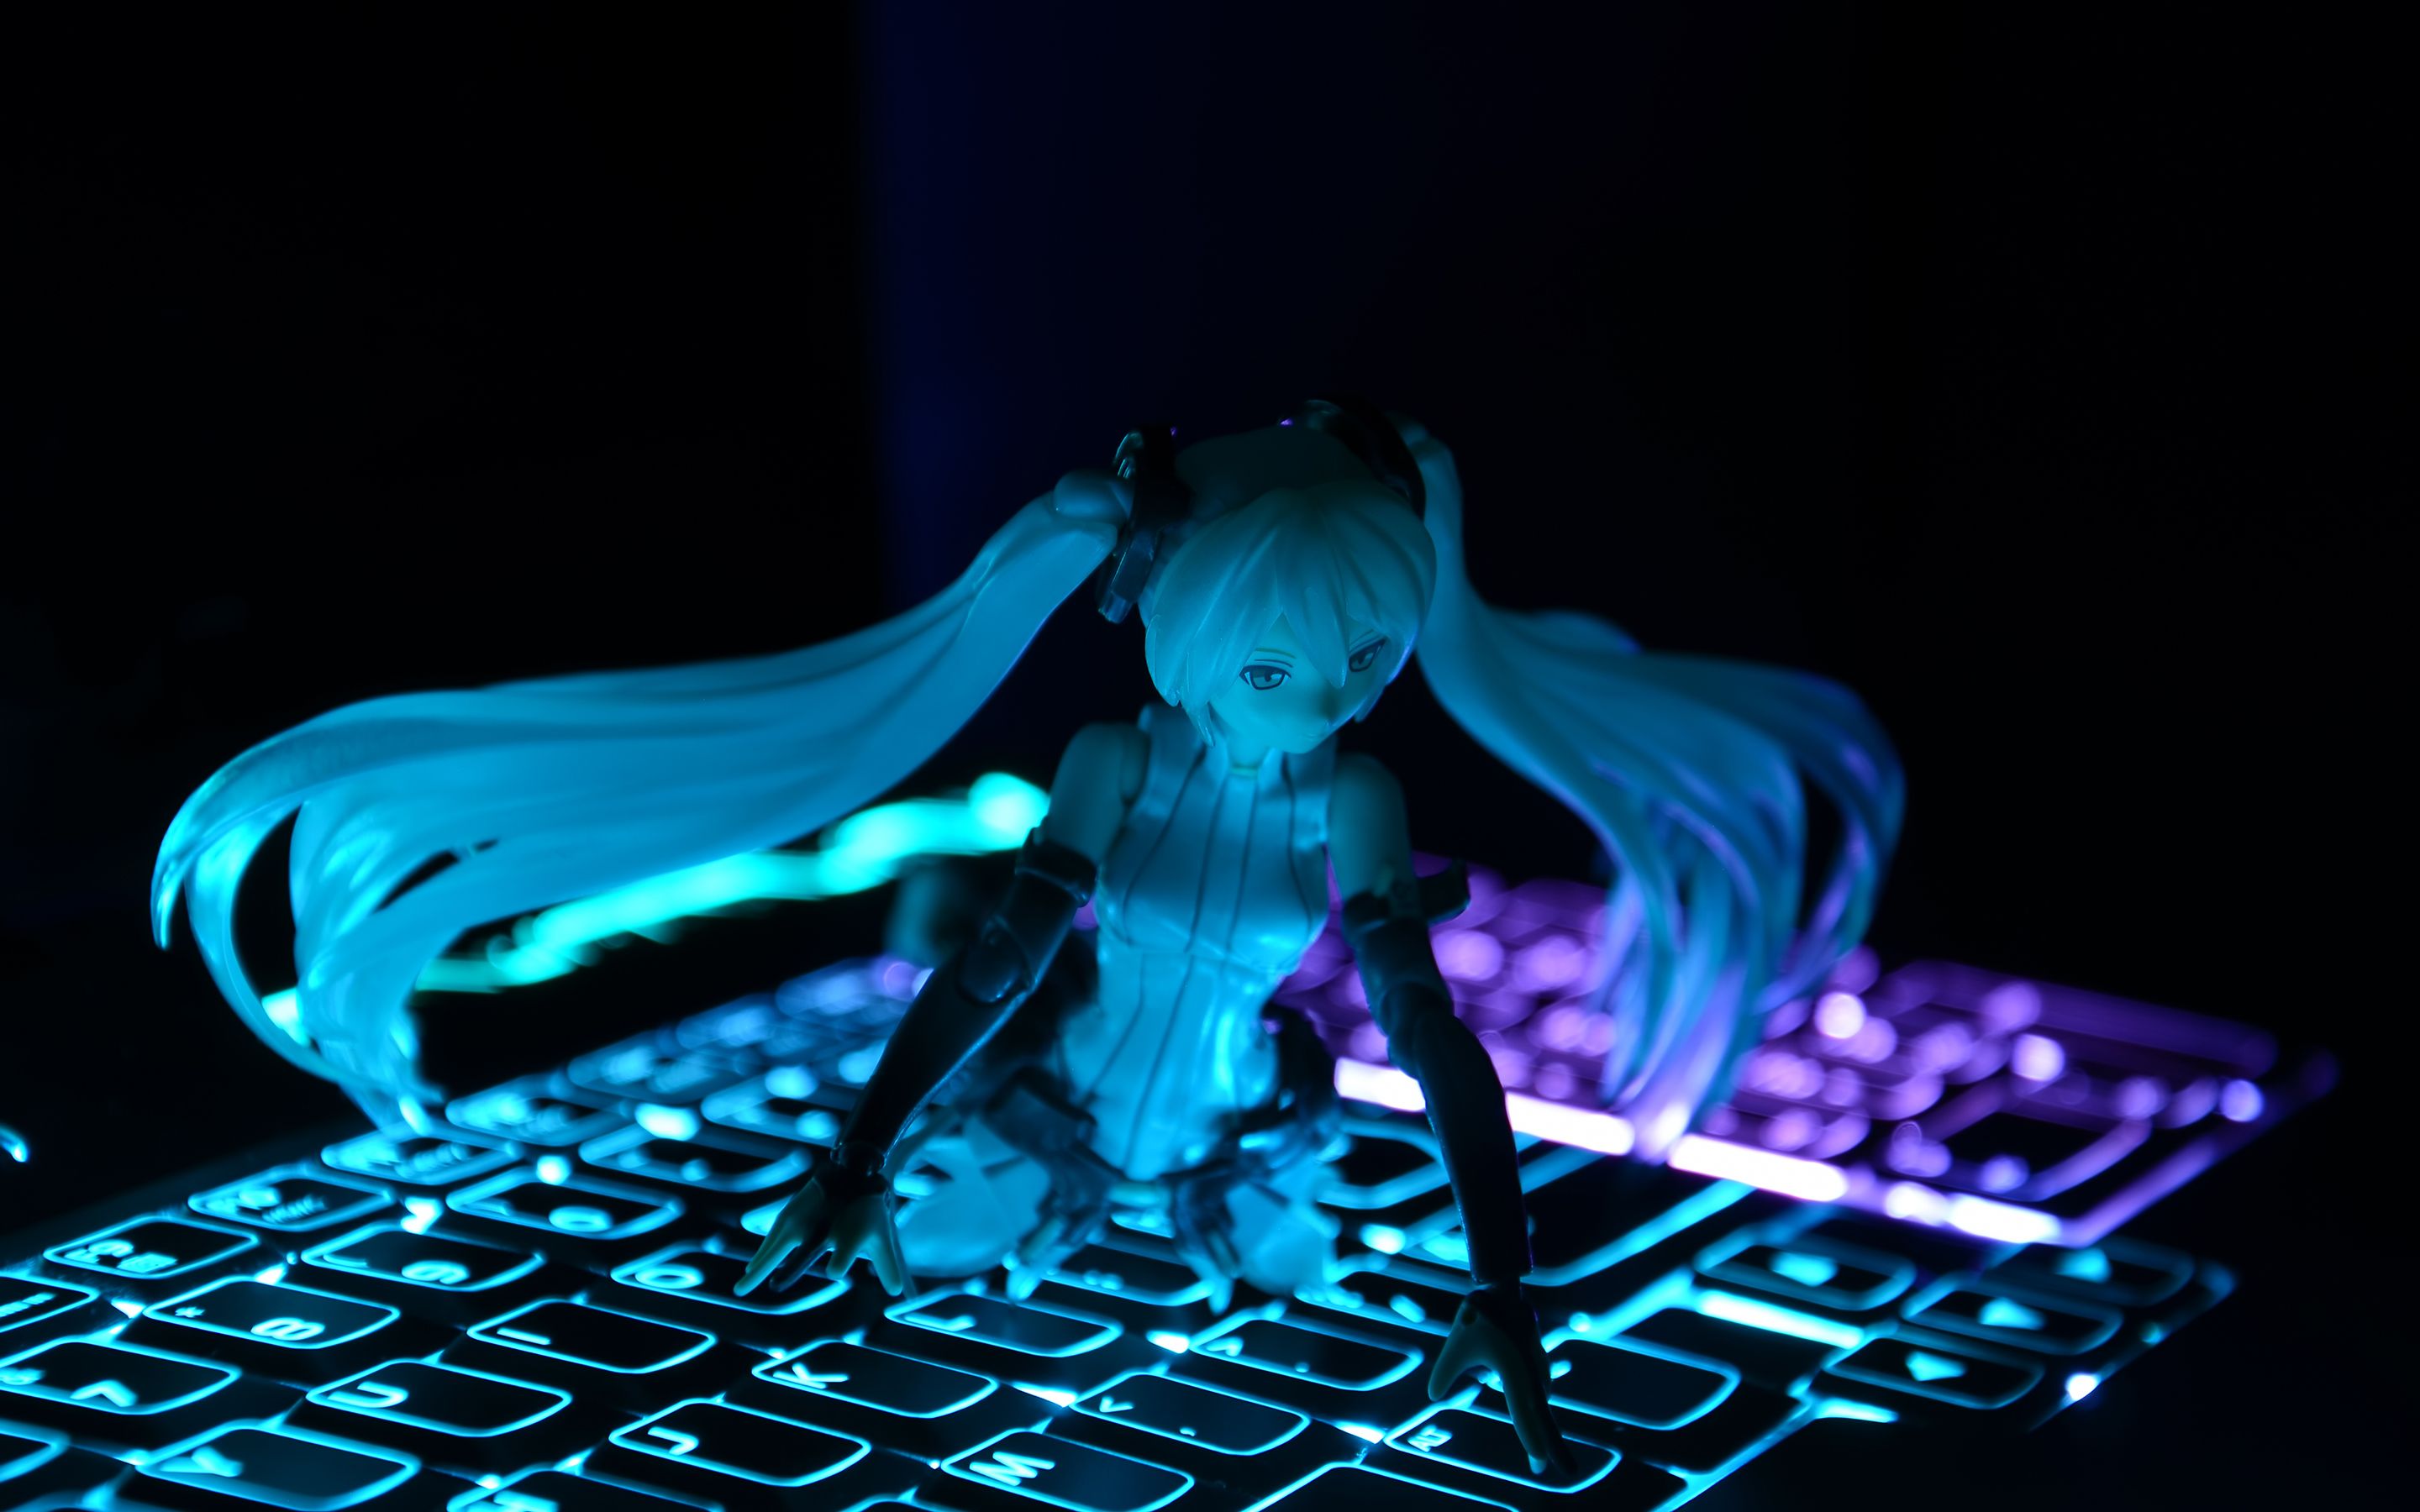 Anime Miku Vocaloid Blue Keyboard Figure wallpaperx1800